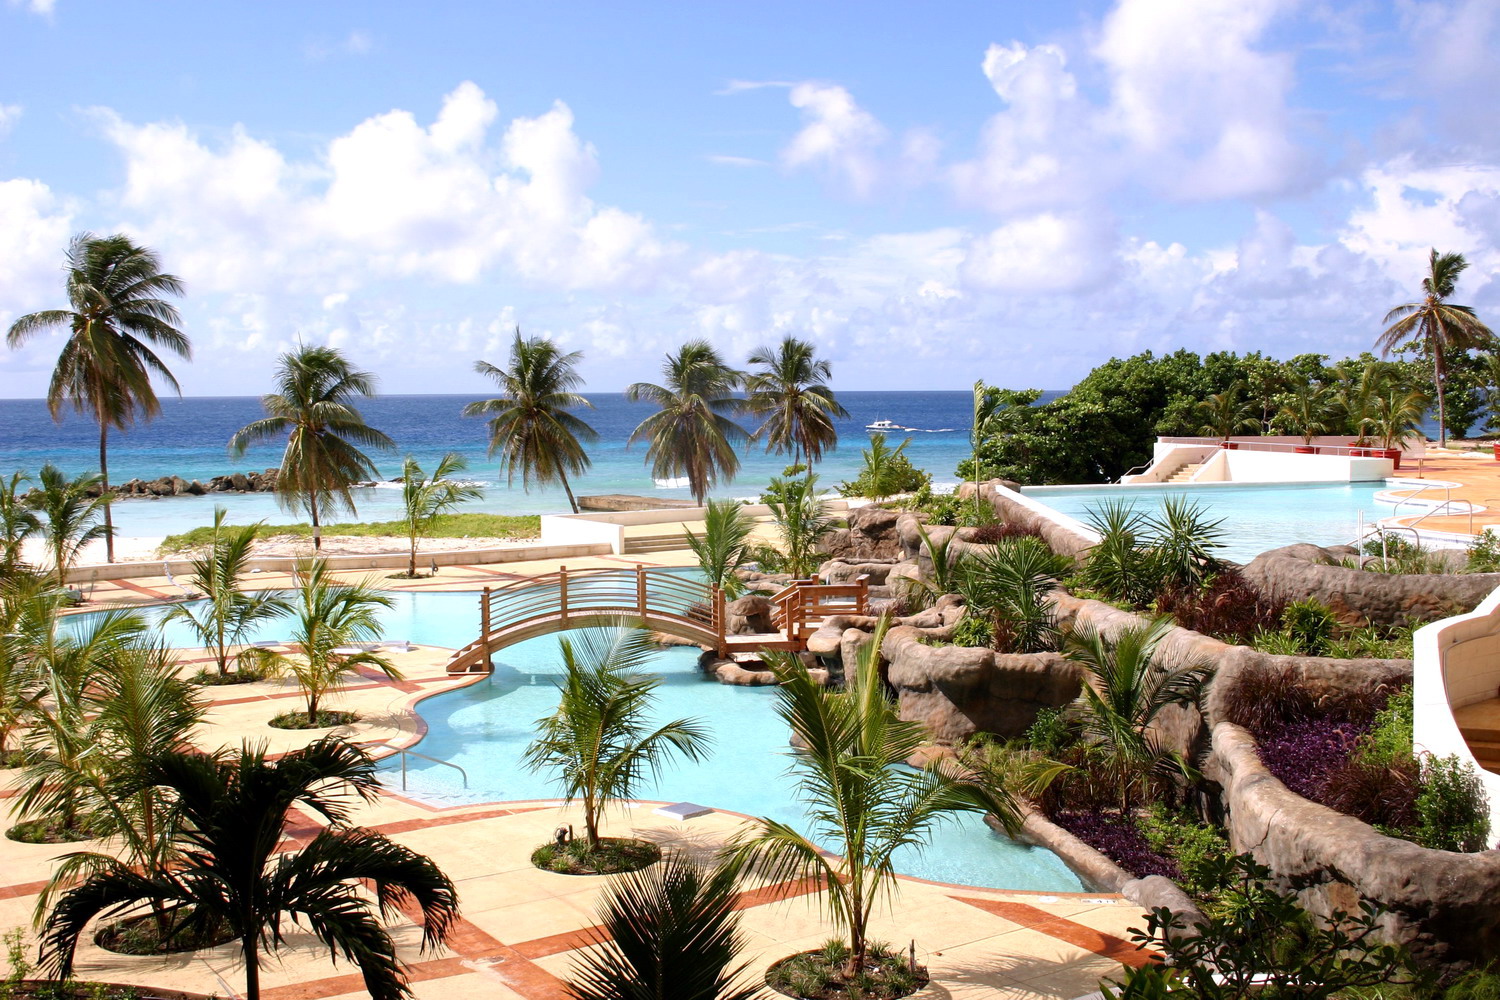 $2050 - Отдых на острове Барбадос в феврале 